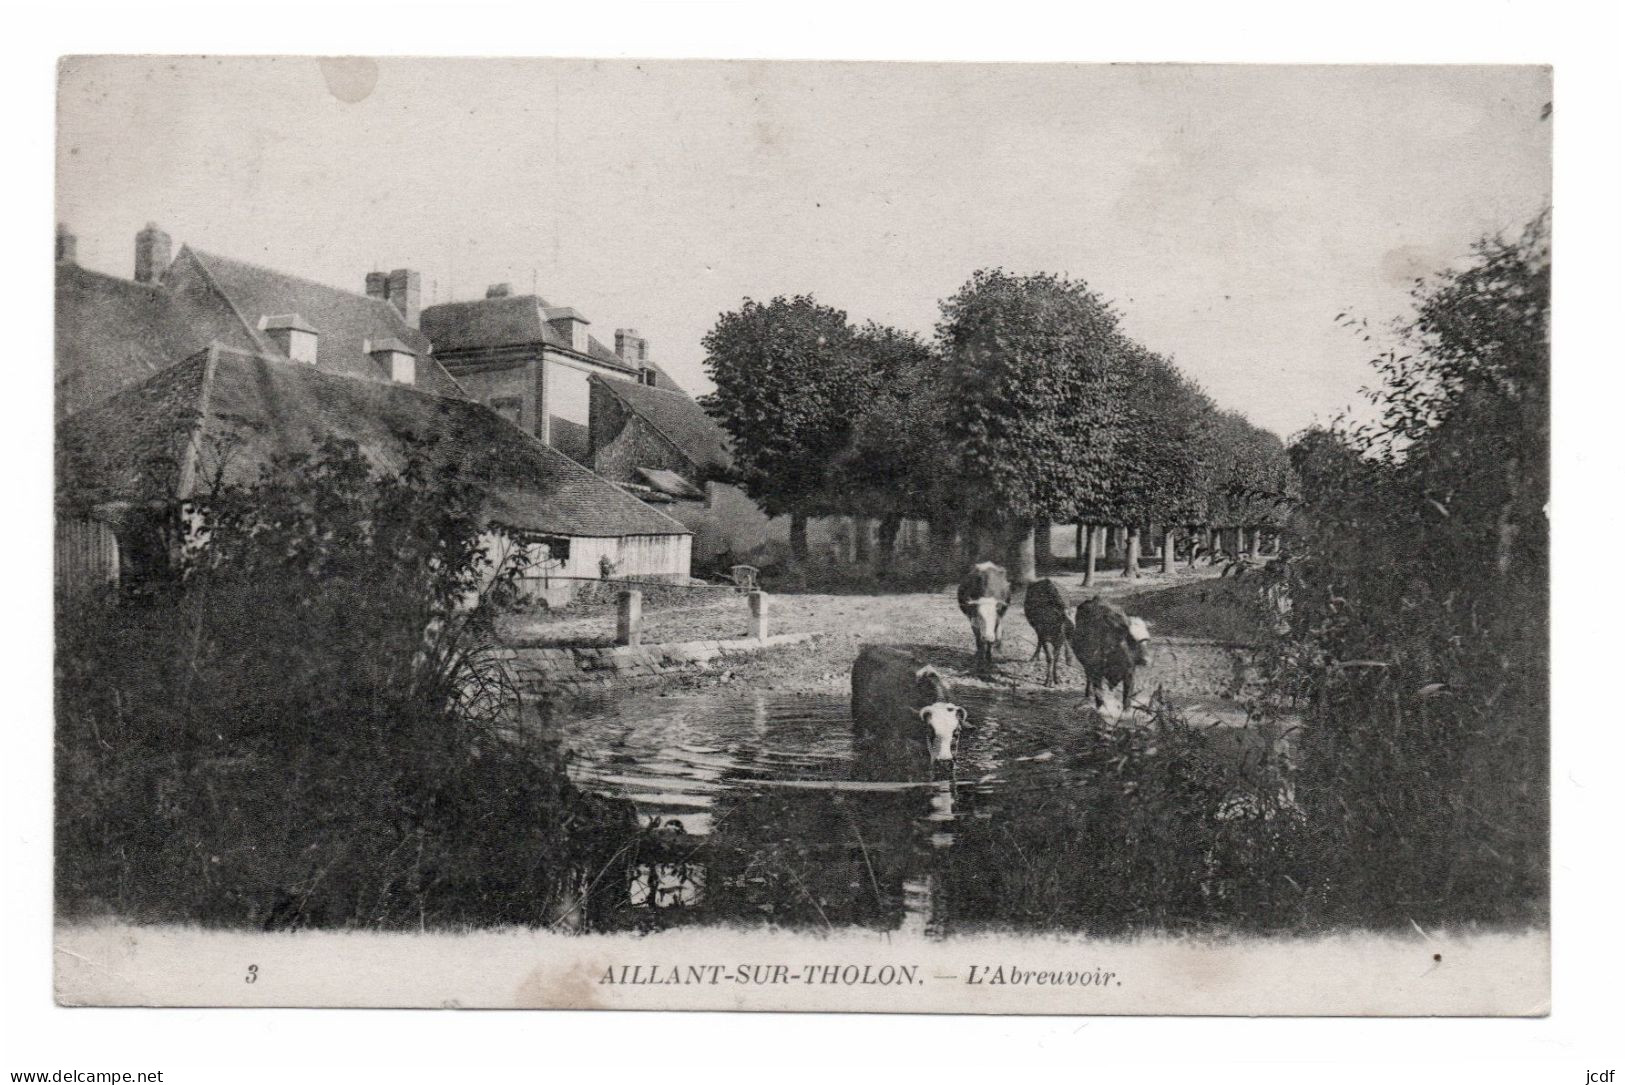 89 AILLANT SUR THOLON - L'Abreuvoir - Série Toulot N° 3 - 1918 - Troupeau De Vaches S'abreuvant - Aillant Sur Tholon